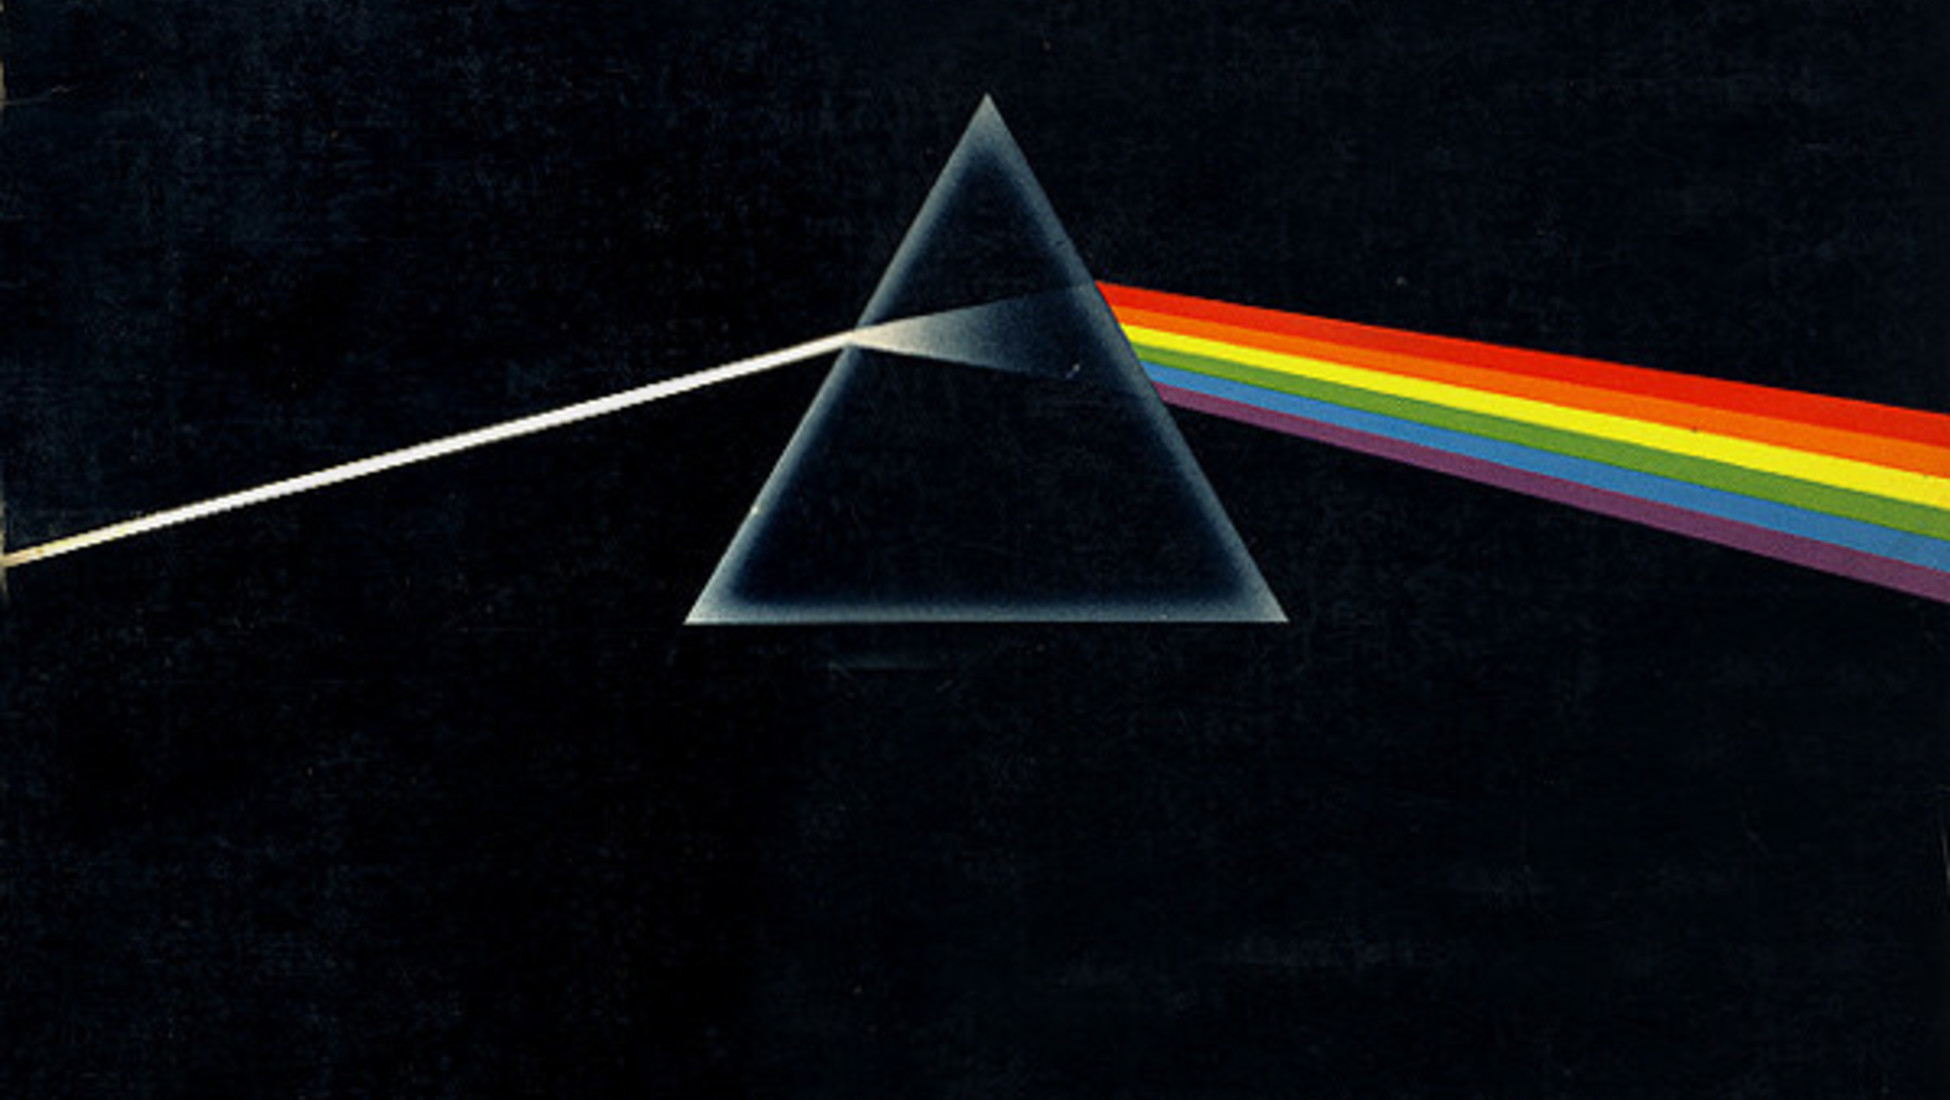 Venduta una rara copia di Ummagumma dei Pink Floyd